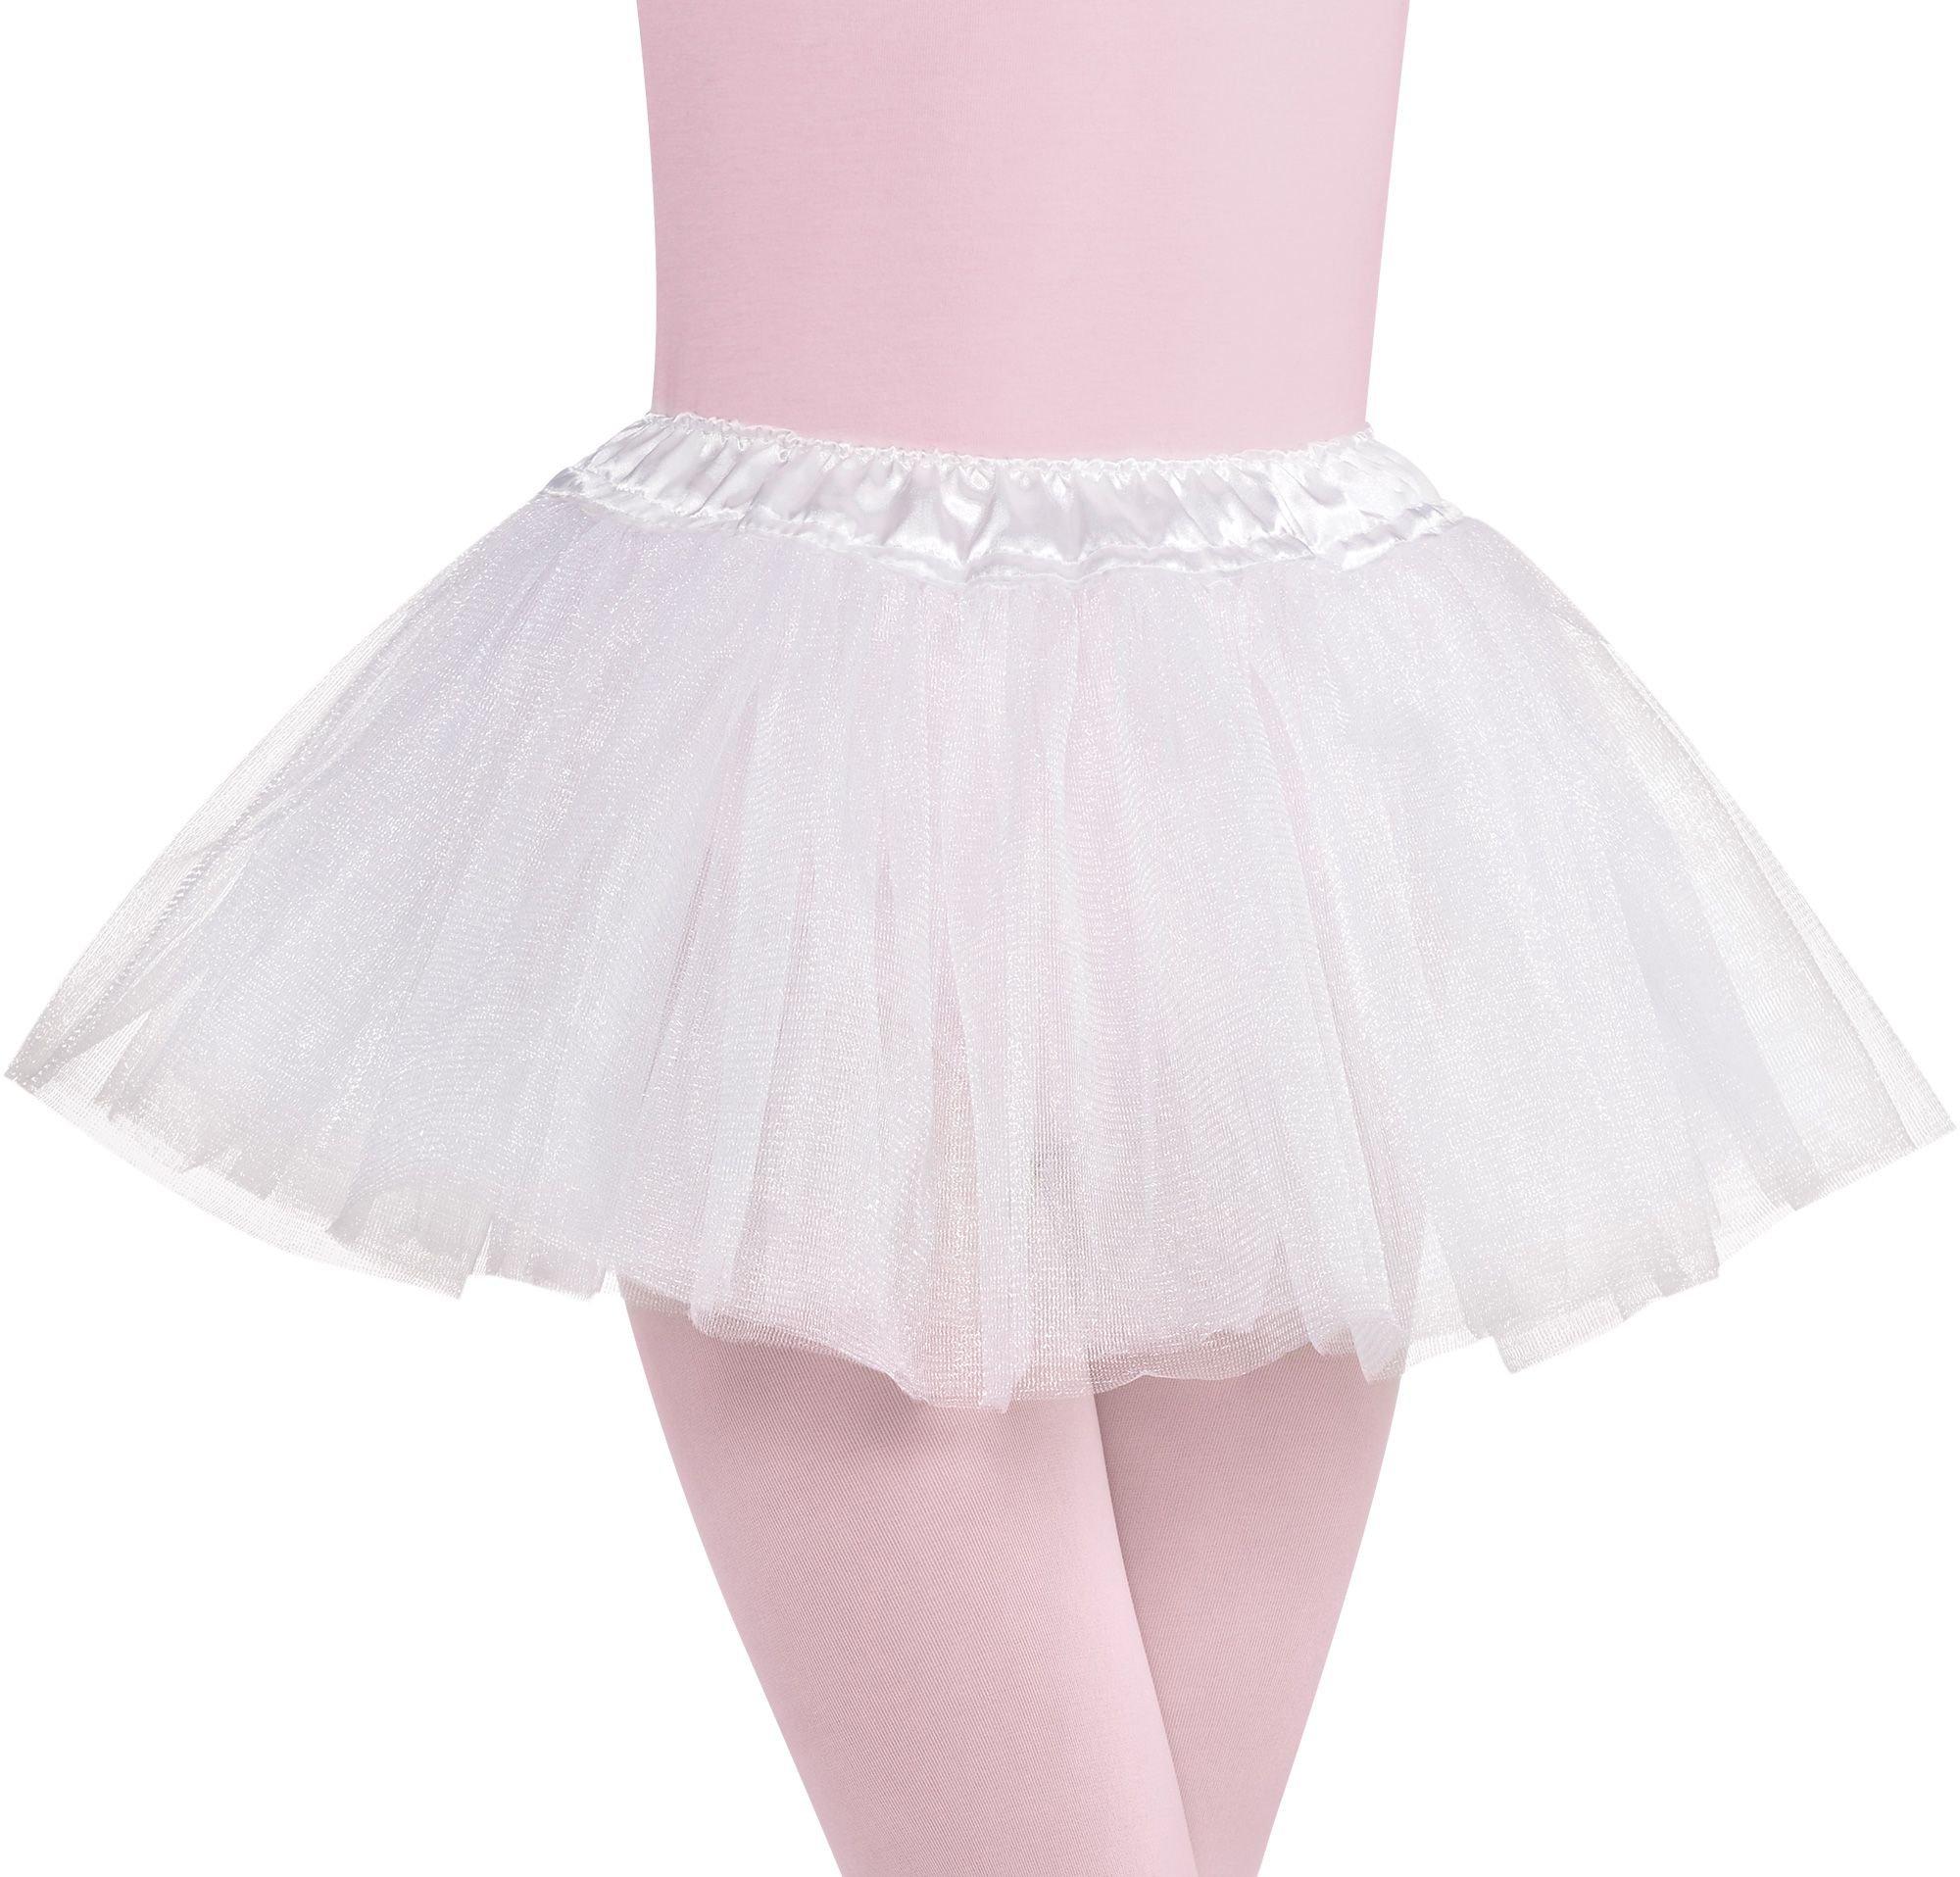 Pure White Tutu Skirt Fluffy Children Tulle Skirt Girls Dance